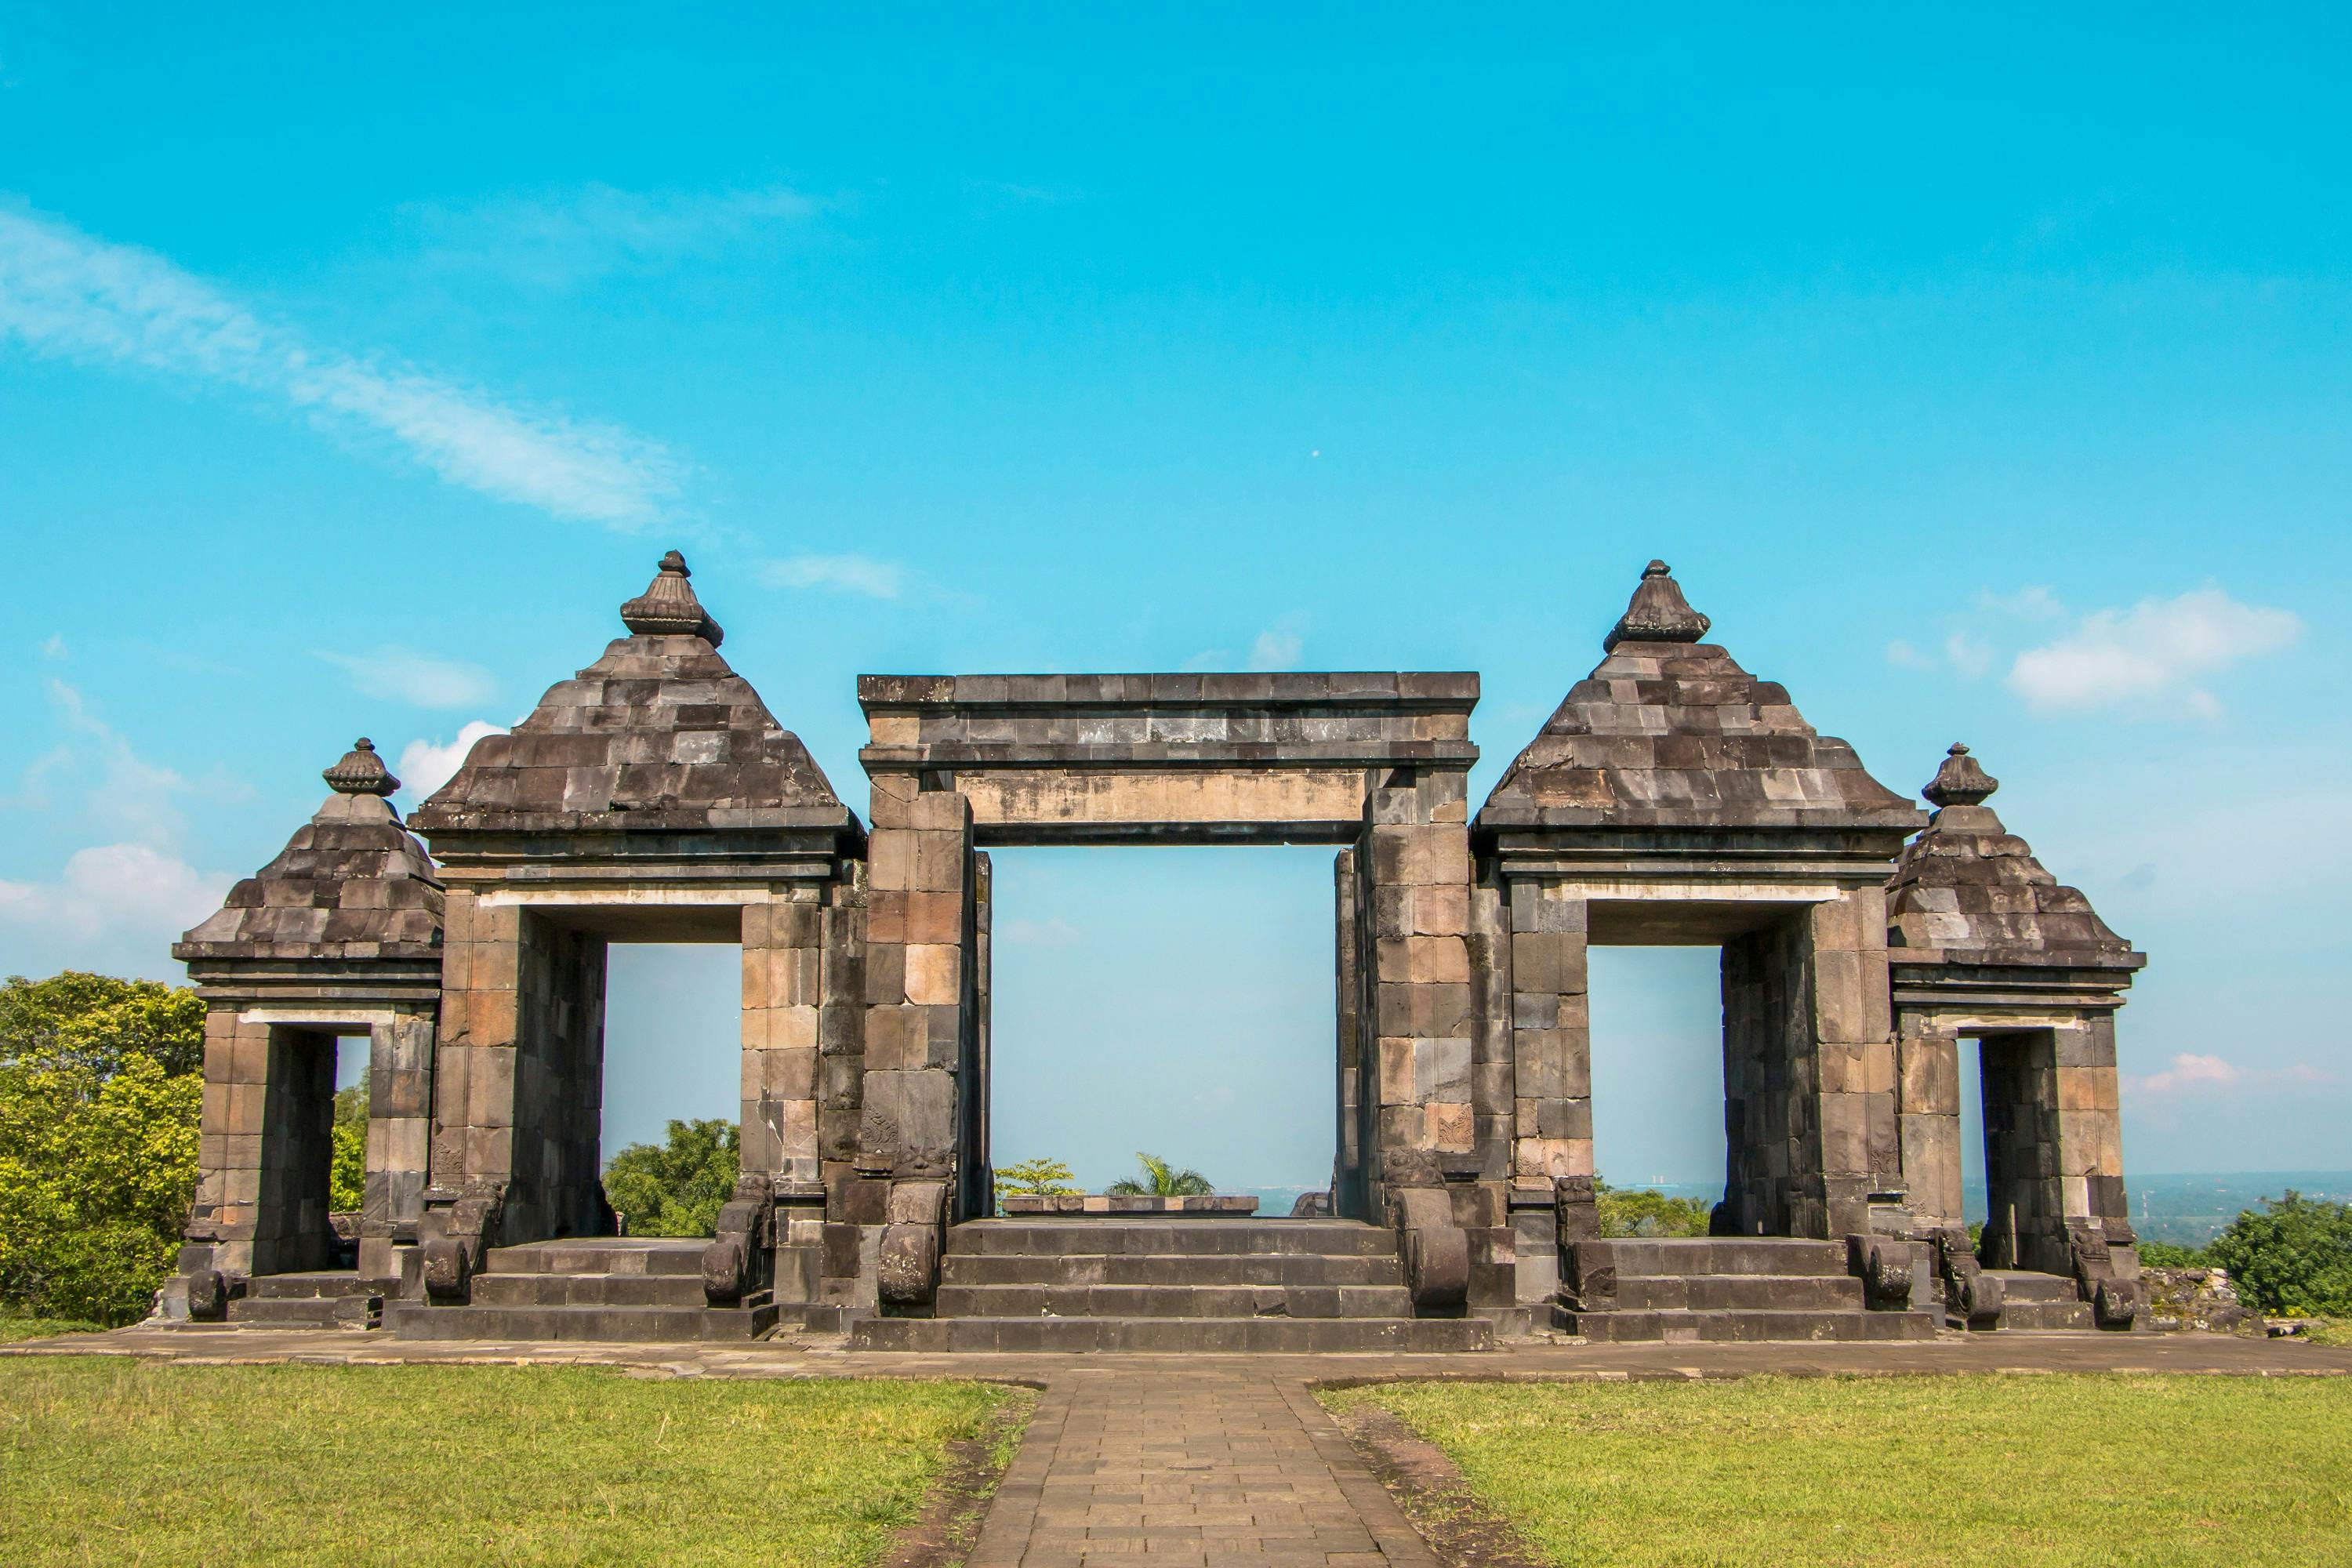 O hipnotizante ingresso do templo de Ratu Boko